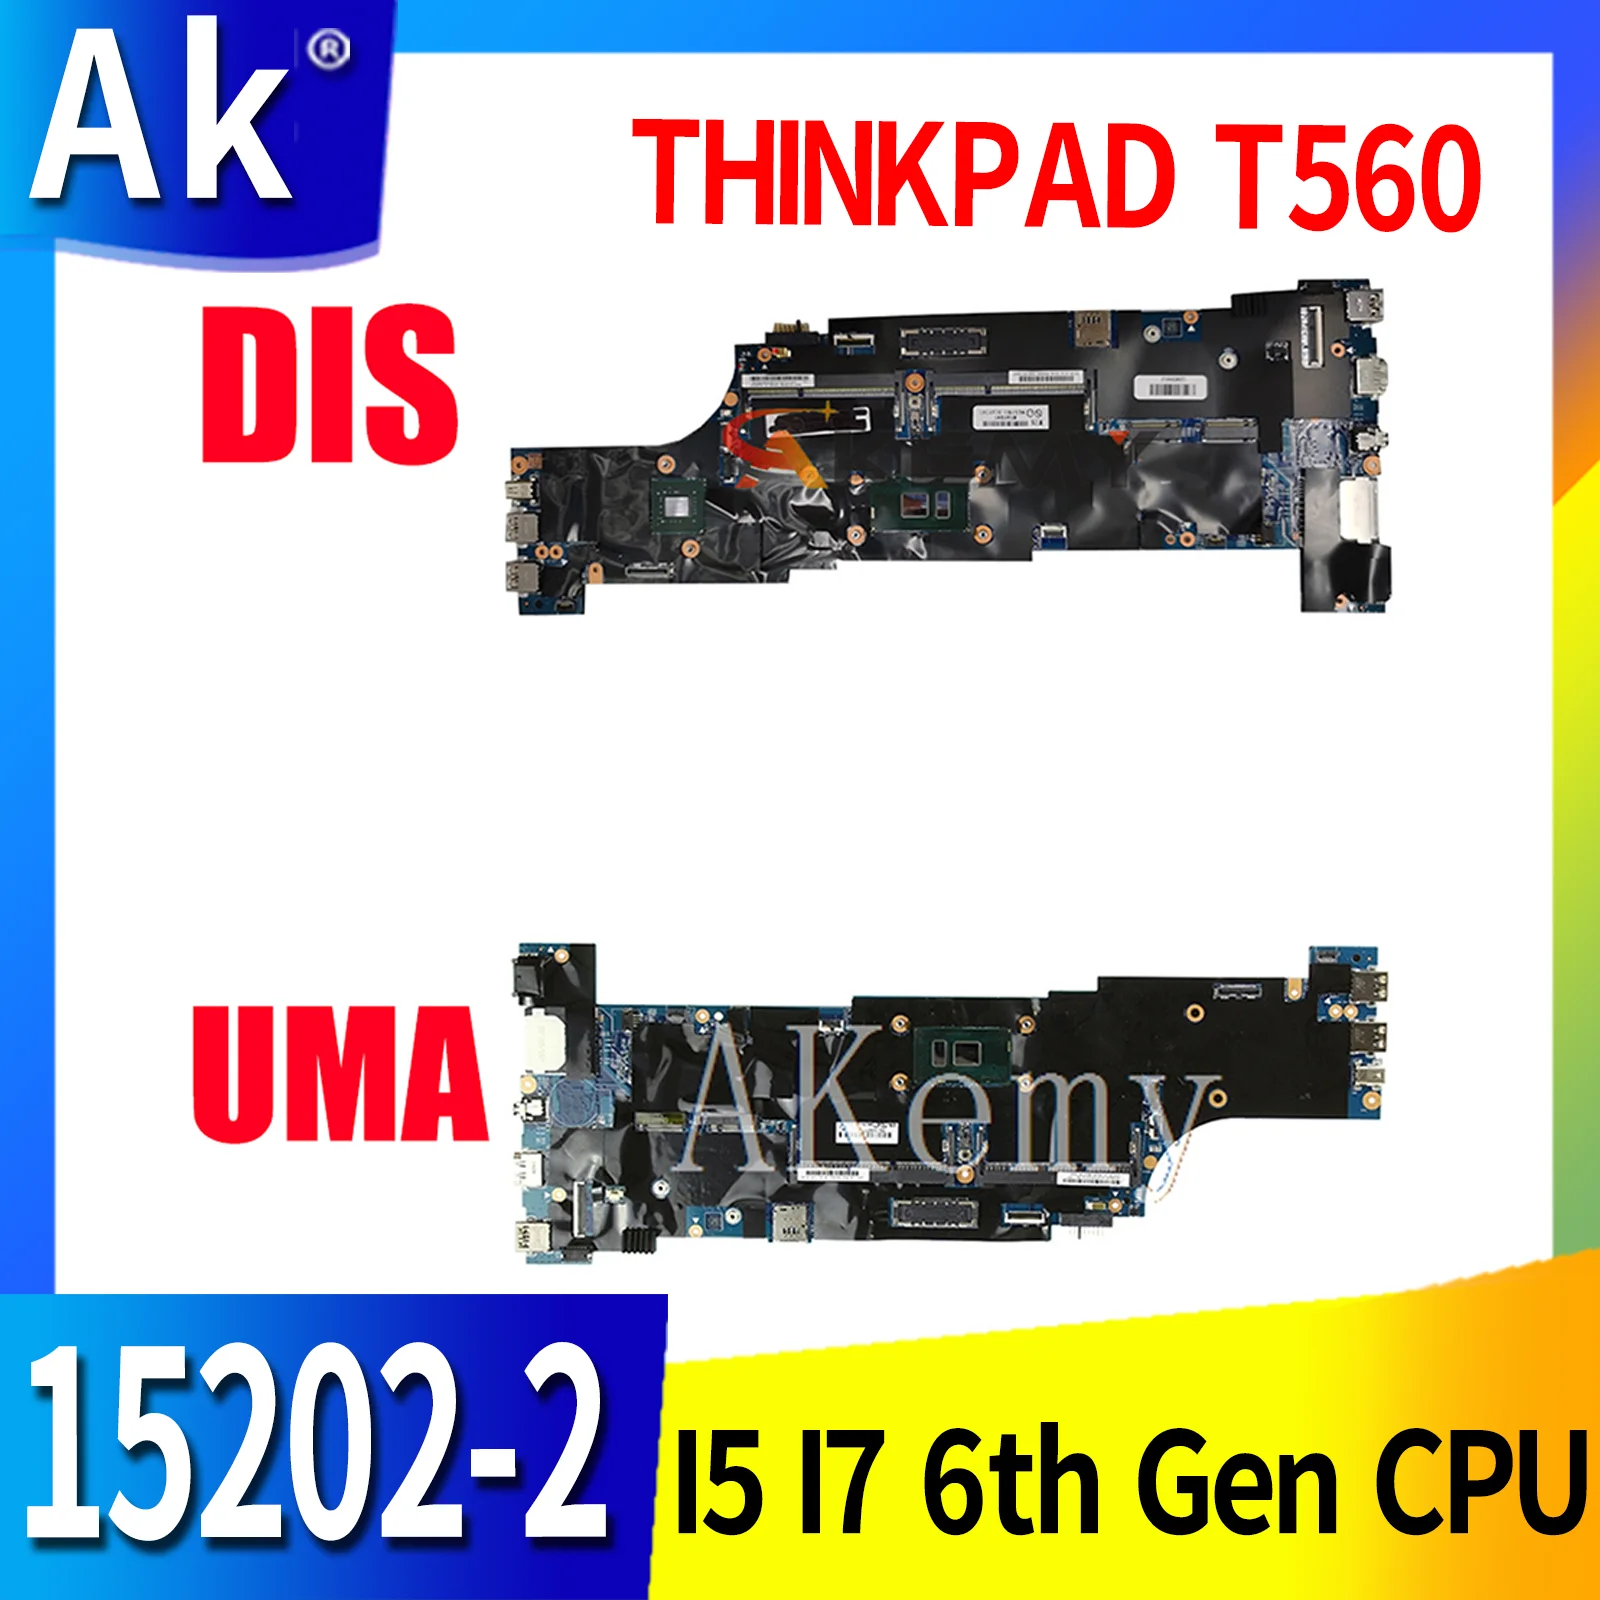   SAMXINNO   LENOVO Thinkpad T560,   15202-2   I5 I7 6- 